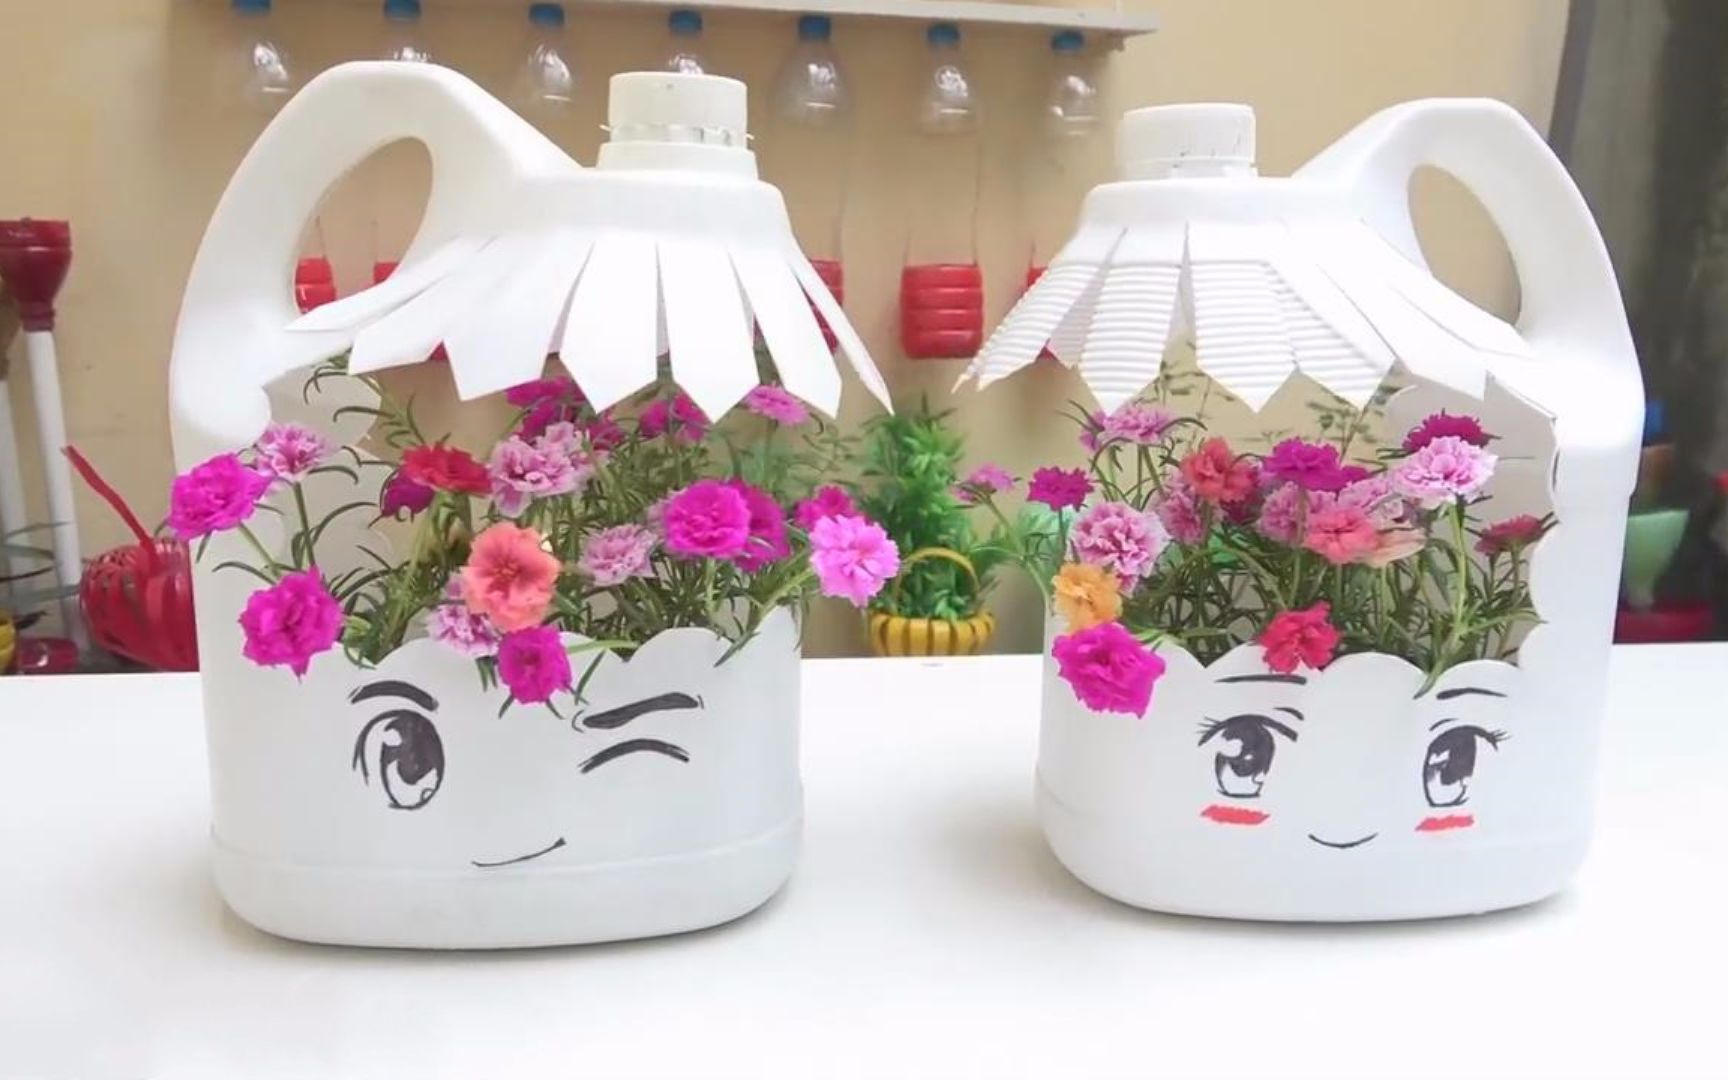 生活小妙招,用塑料桶制作花盆的方法,简单又实用!